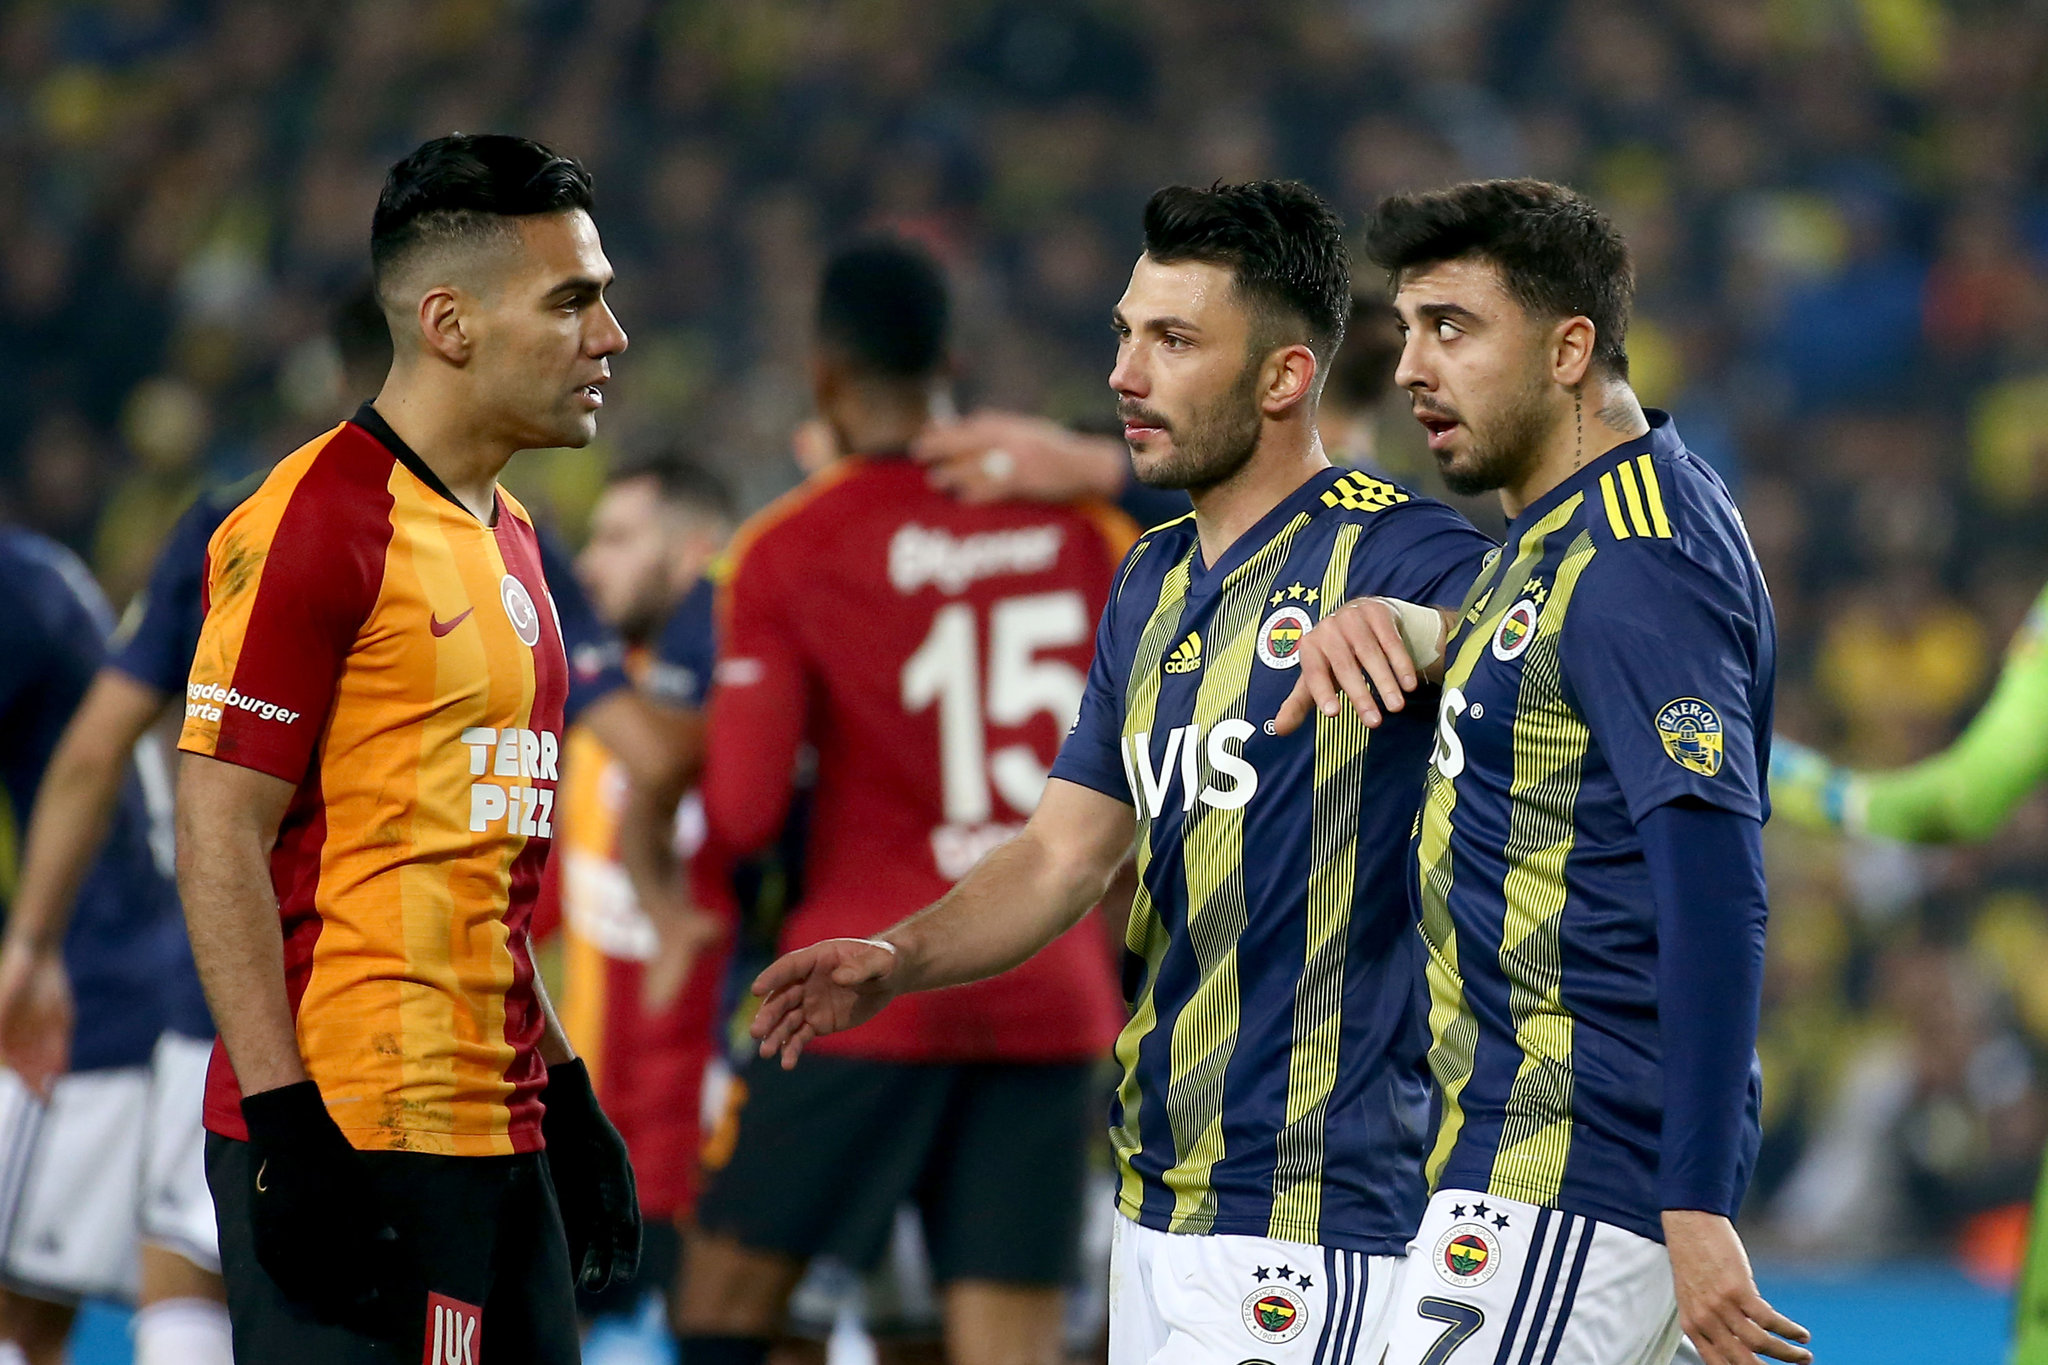 Galatasaray - Fenerbahçe derbisini yönetecek olan Halil Umut Meler tarihi maçı da yönetmişti! İşte öne çıkan detaylar...